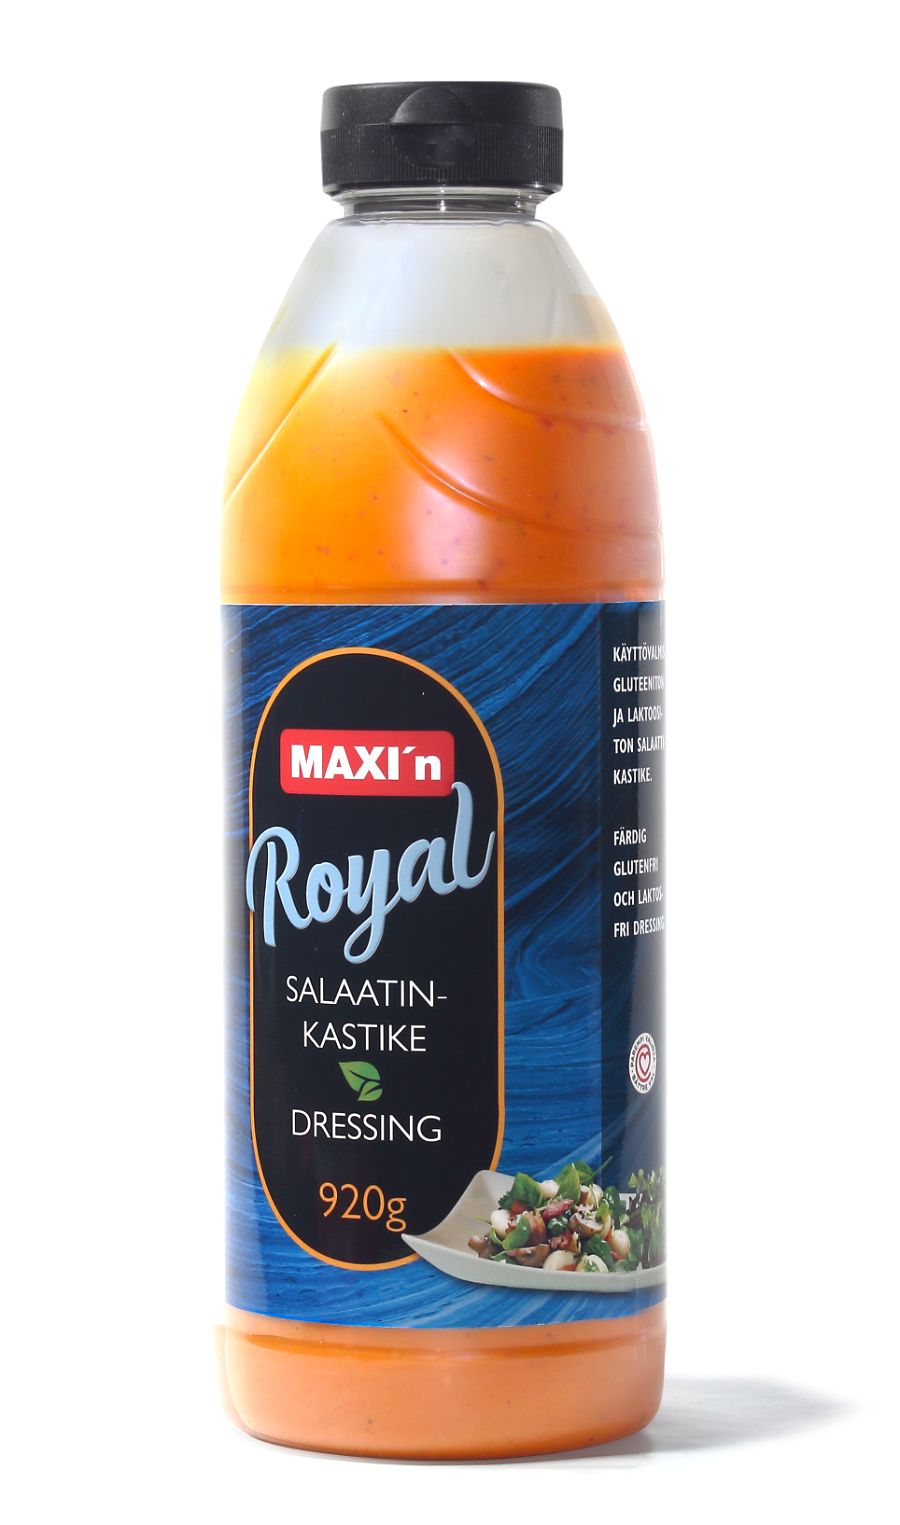 Maxi'n Royal salaatinkastike 920 g